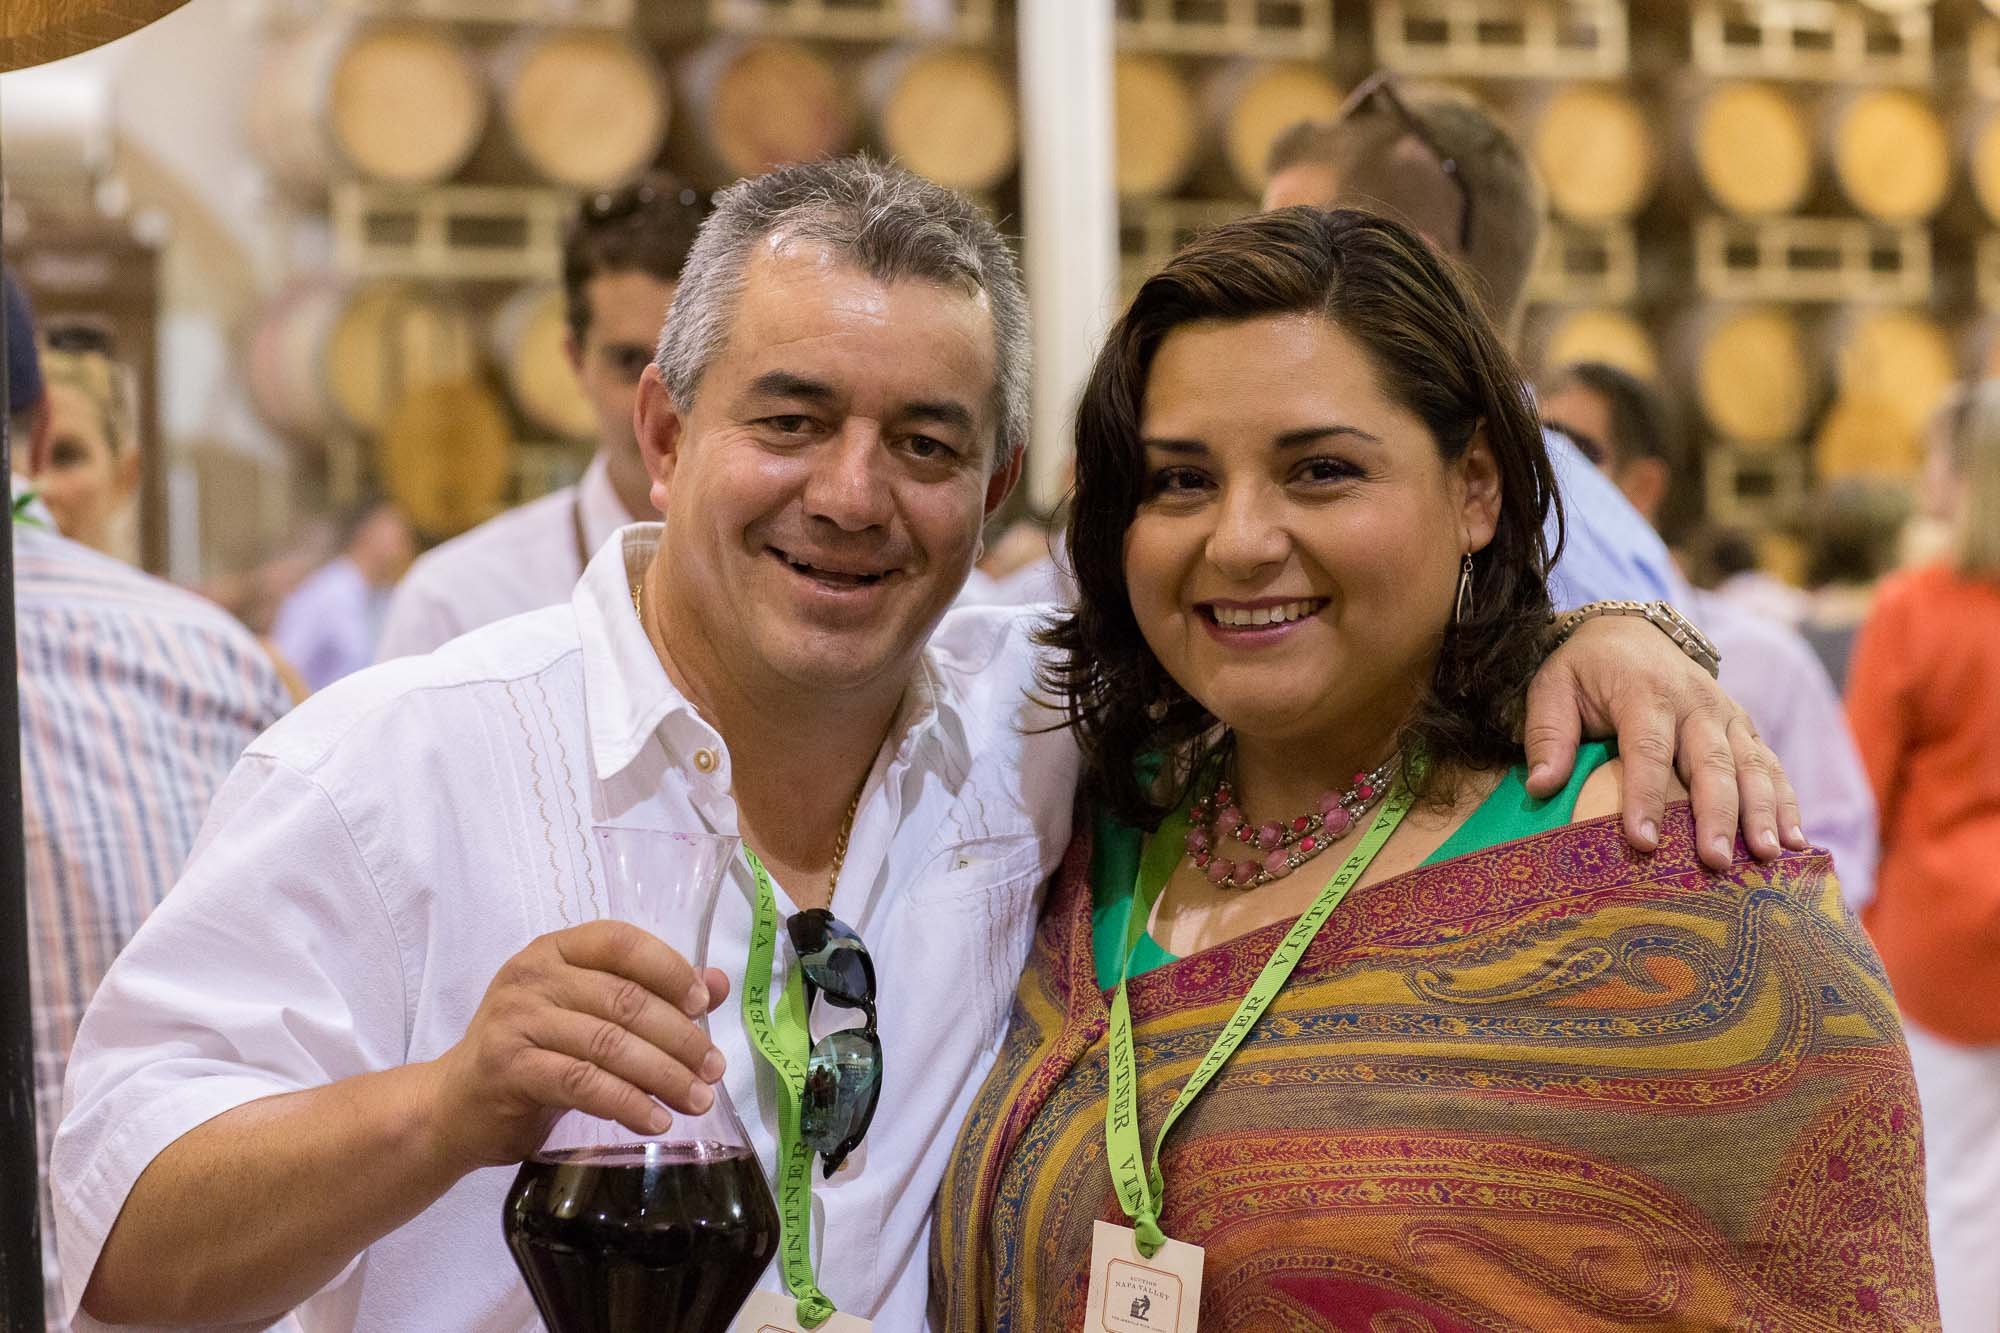 Rolando and Lorena Herrera, vintners at Mi Sueño